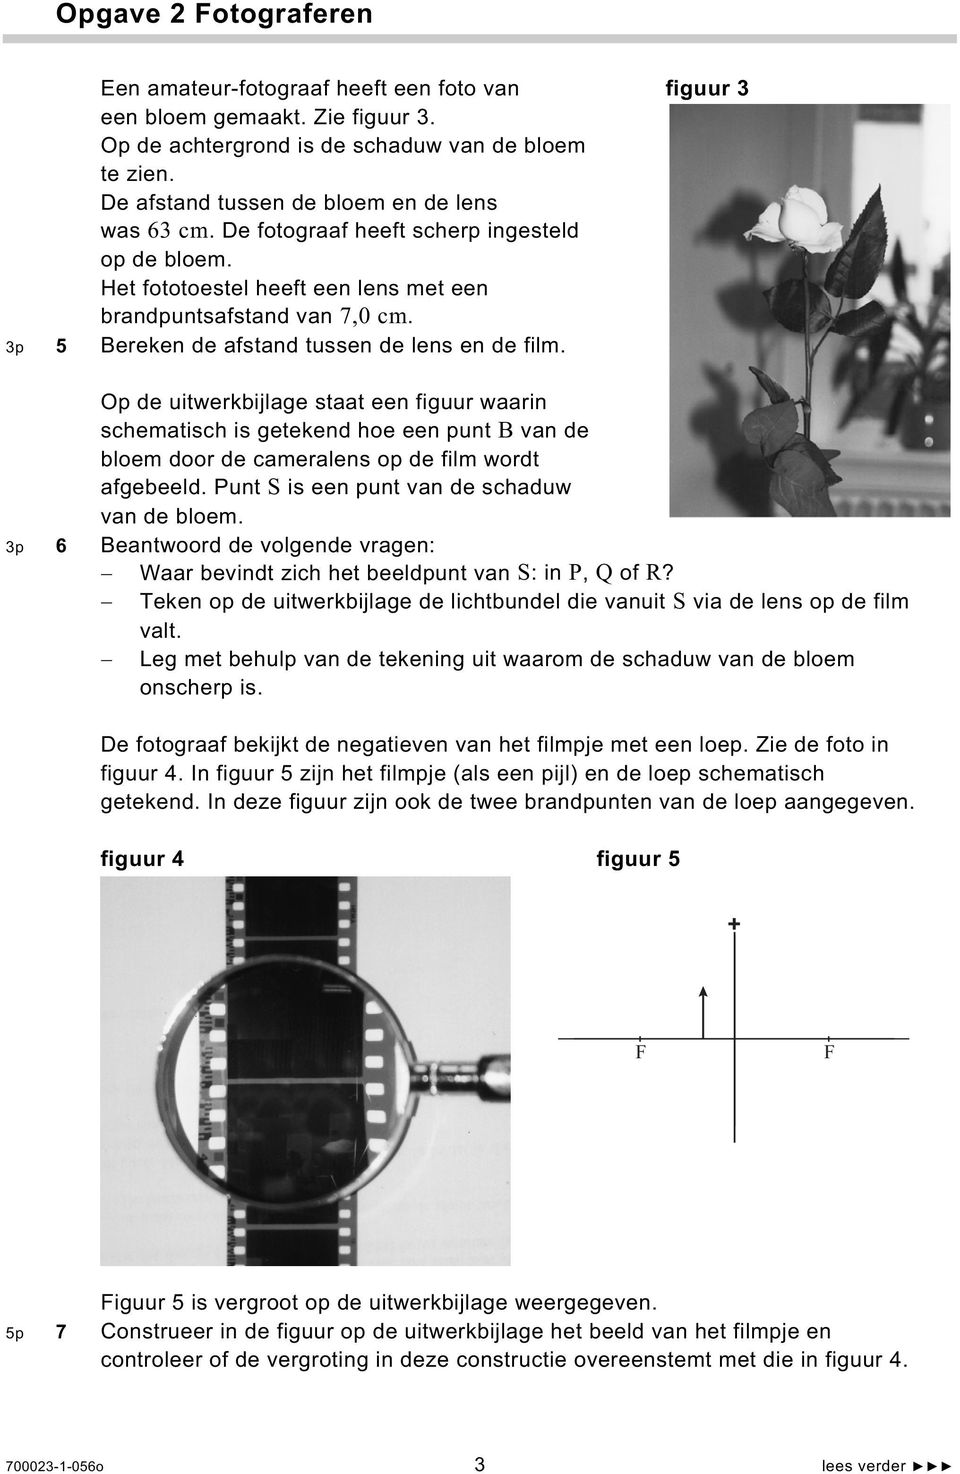 3p 5 Bereken de afstand tussen de lens en de film. Op de uitwerkbijlage staat een figuur waarin schematisch is getekend hoe een punt B van de bloem door de cameralens op de film wordt afgebeeld.